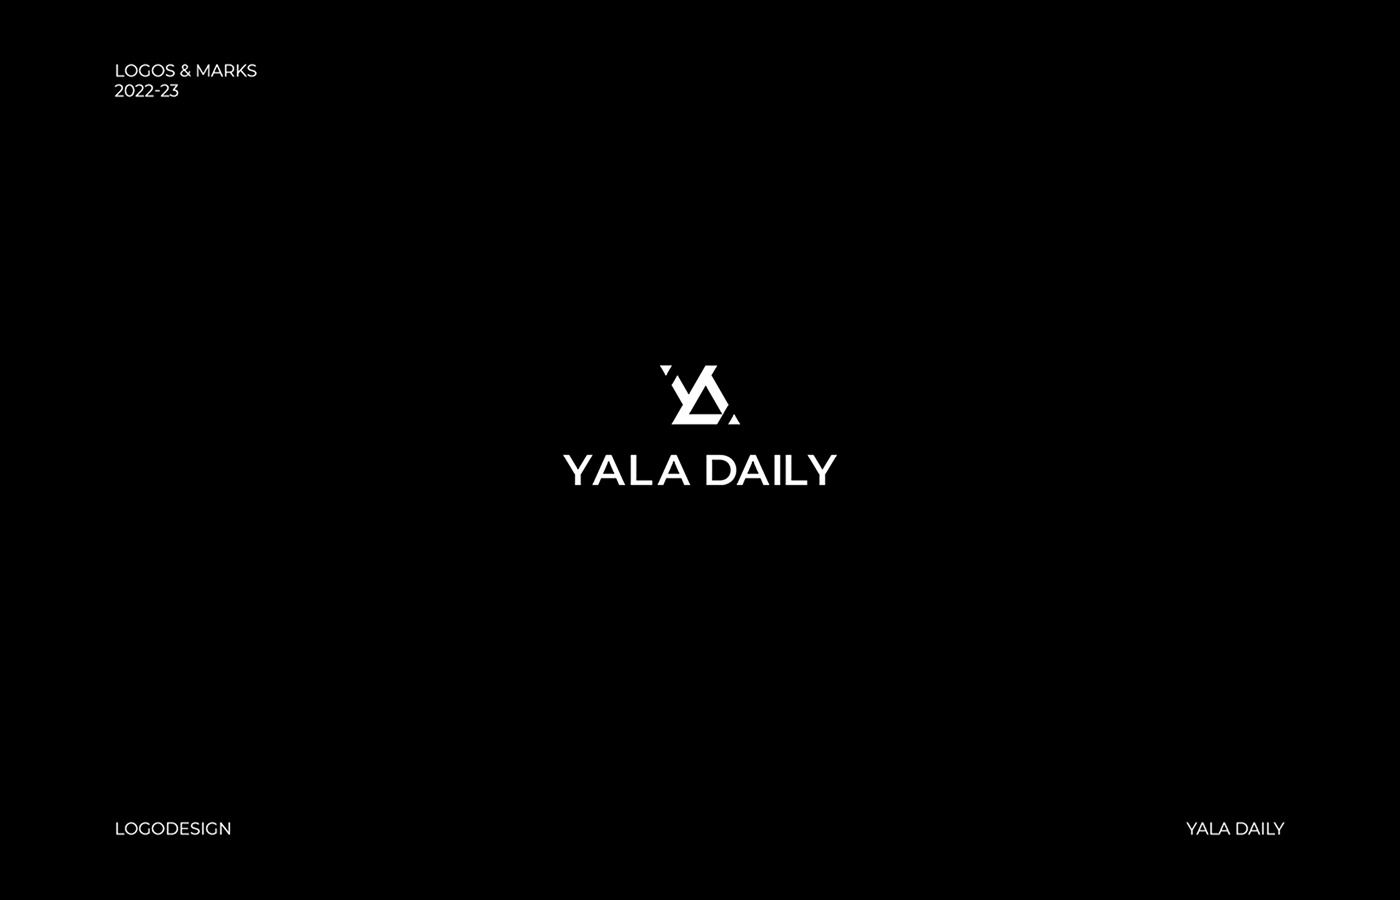 Yala Daily logo